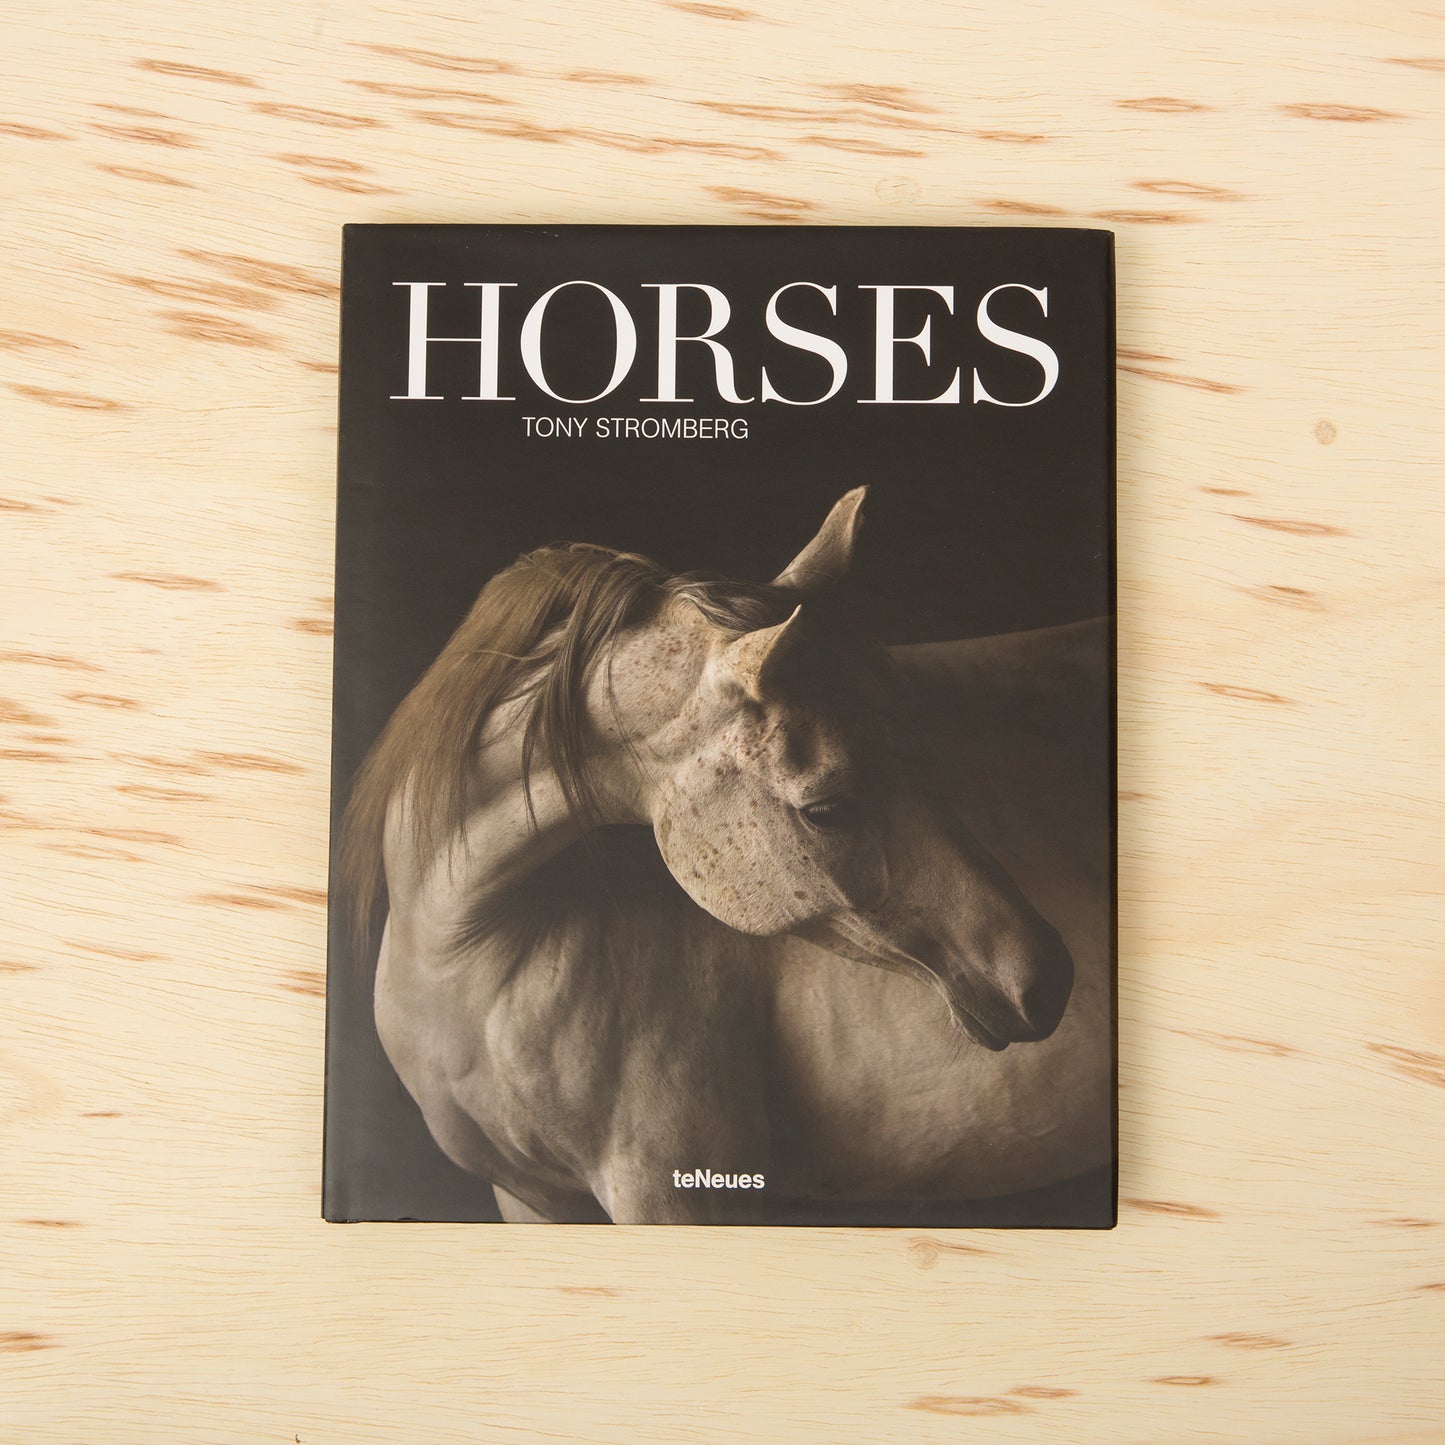 Horses by Tony Stromberg